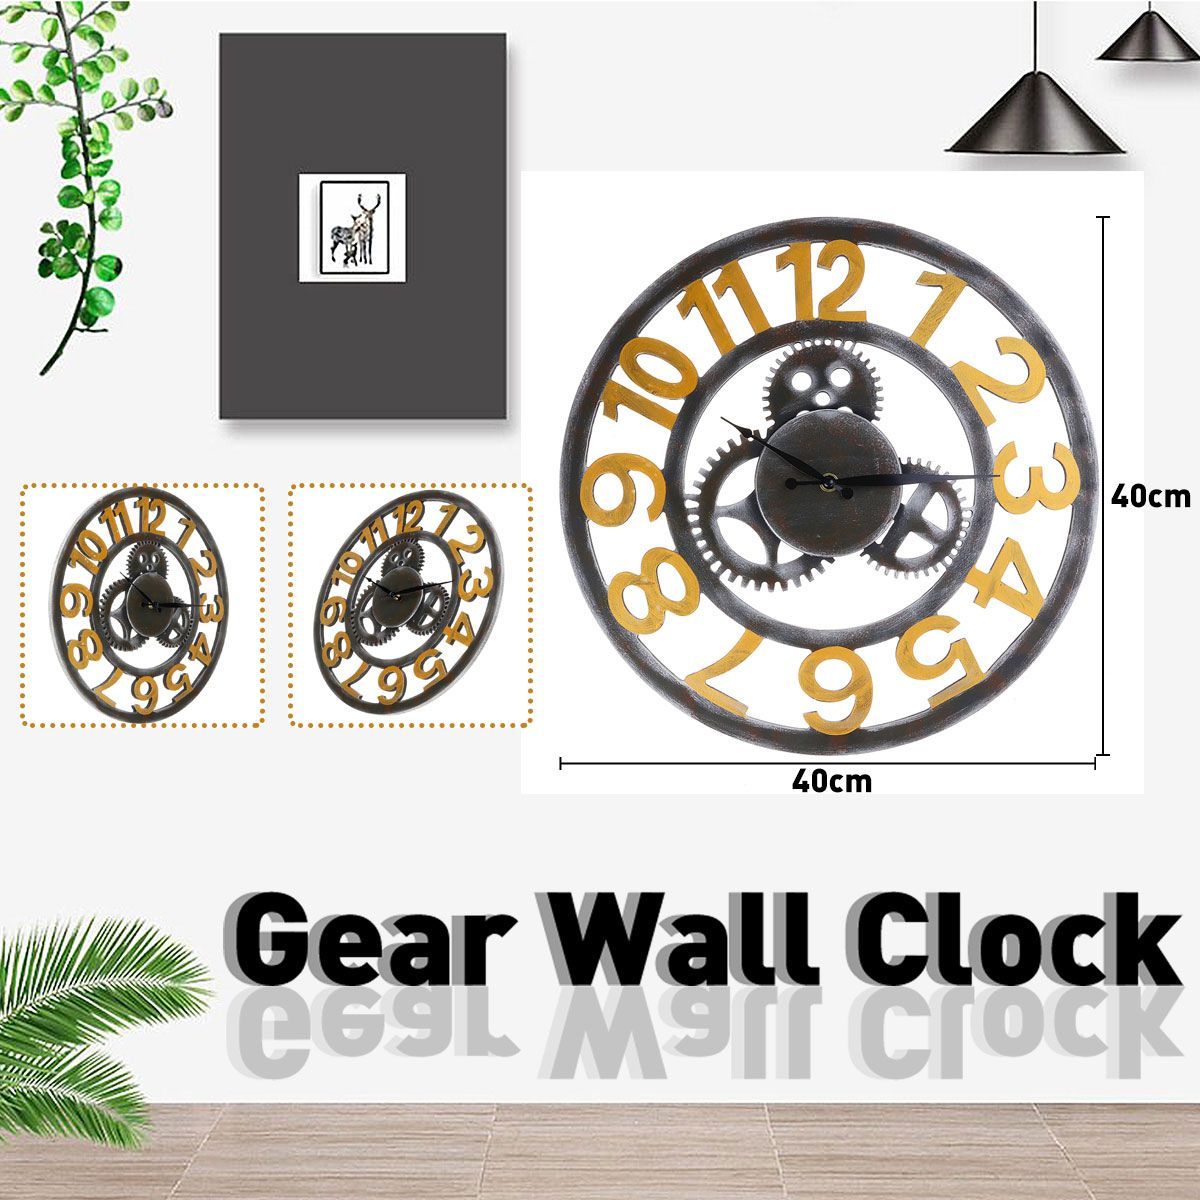 Gear-Wall-Clock-Hollow-out-Rome-Digital-Restaurant-Decorative-Bell-Diameter-40cm-1578421